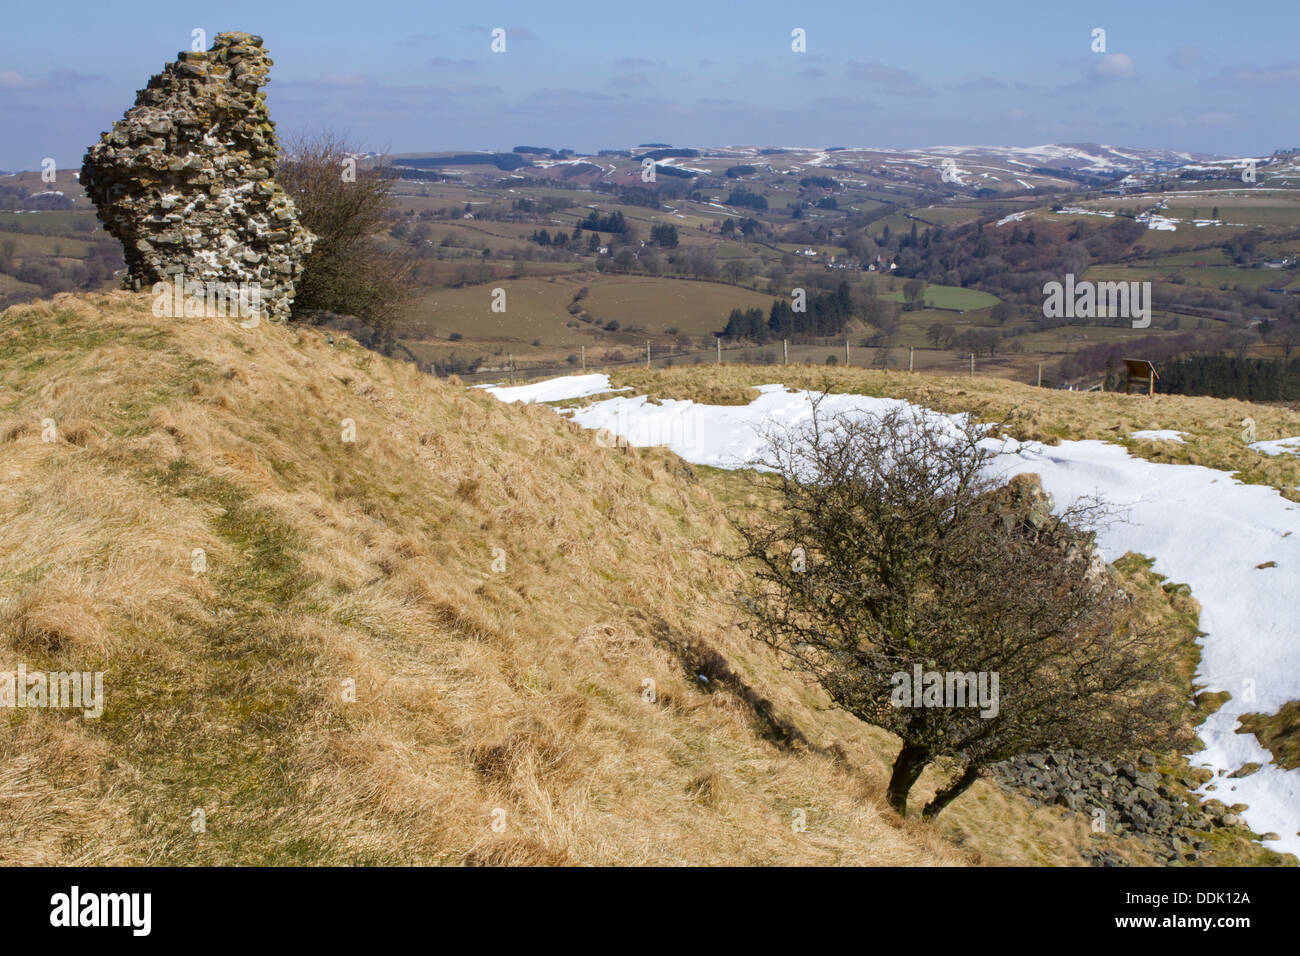 Vestiges de château gatehouse sur Travaux de terrassement. Castell Tinboeth Fynydd, près de Llanbadarn, Powys, Pays de Galles. Avril. Banque D'Images